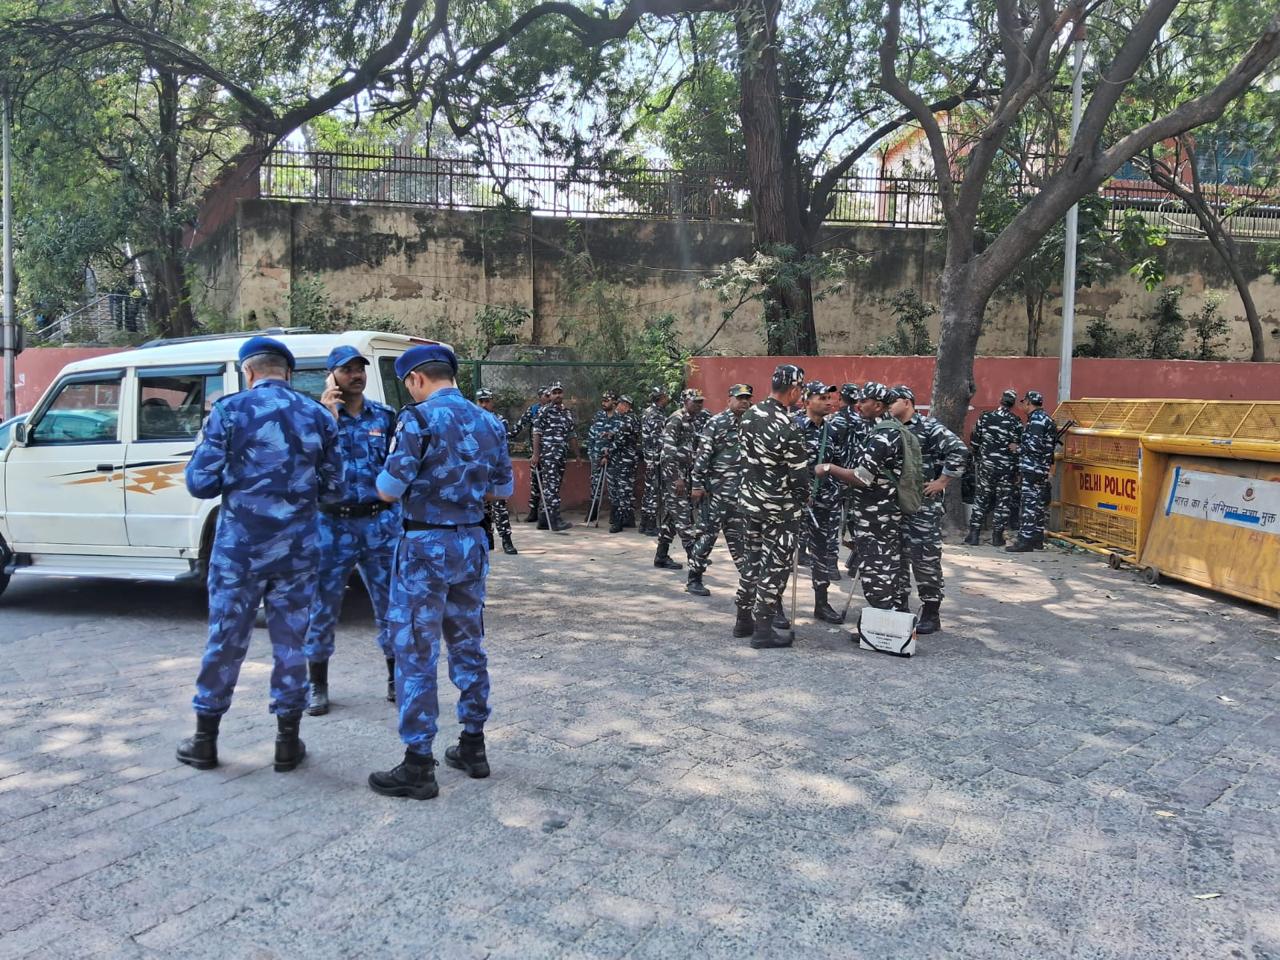 Forces deployed during the arrest of CM Kejriwal 